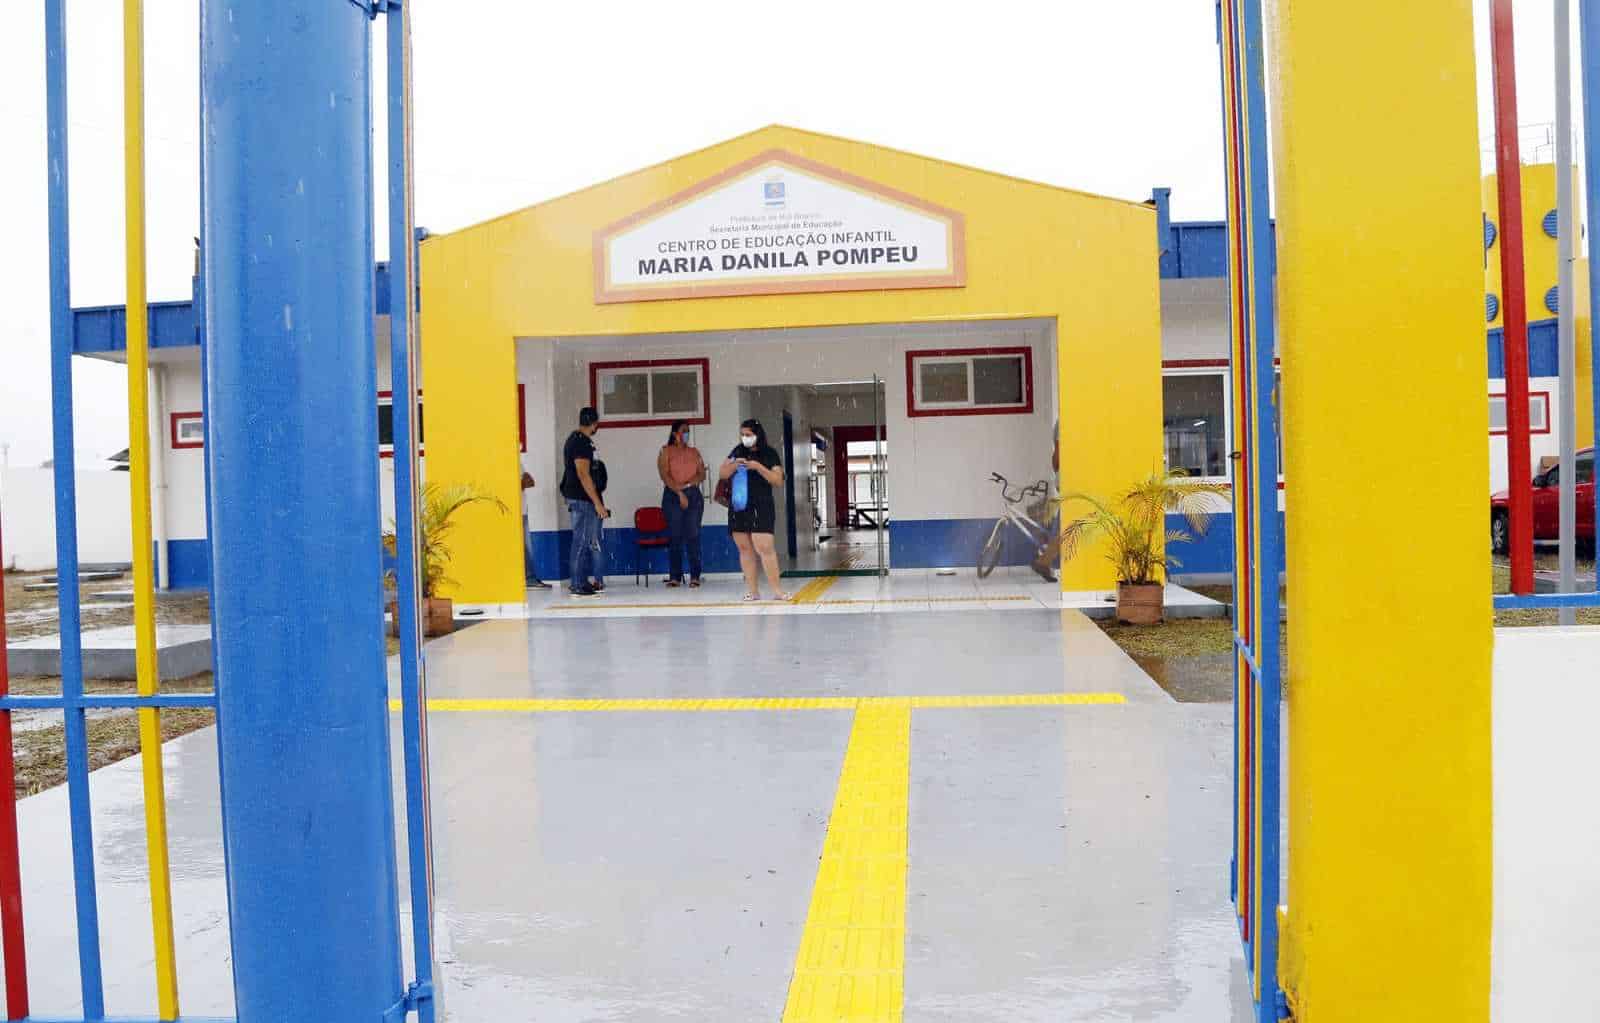 Centro de Educação Infantil Maria Danila Pompeu, localizado na Cidade do Povo